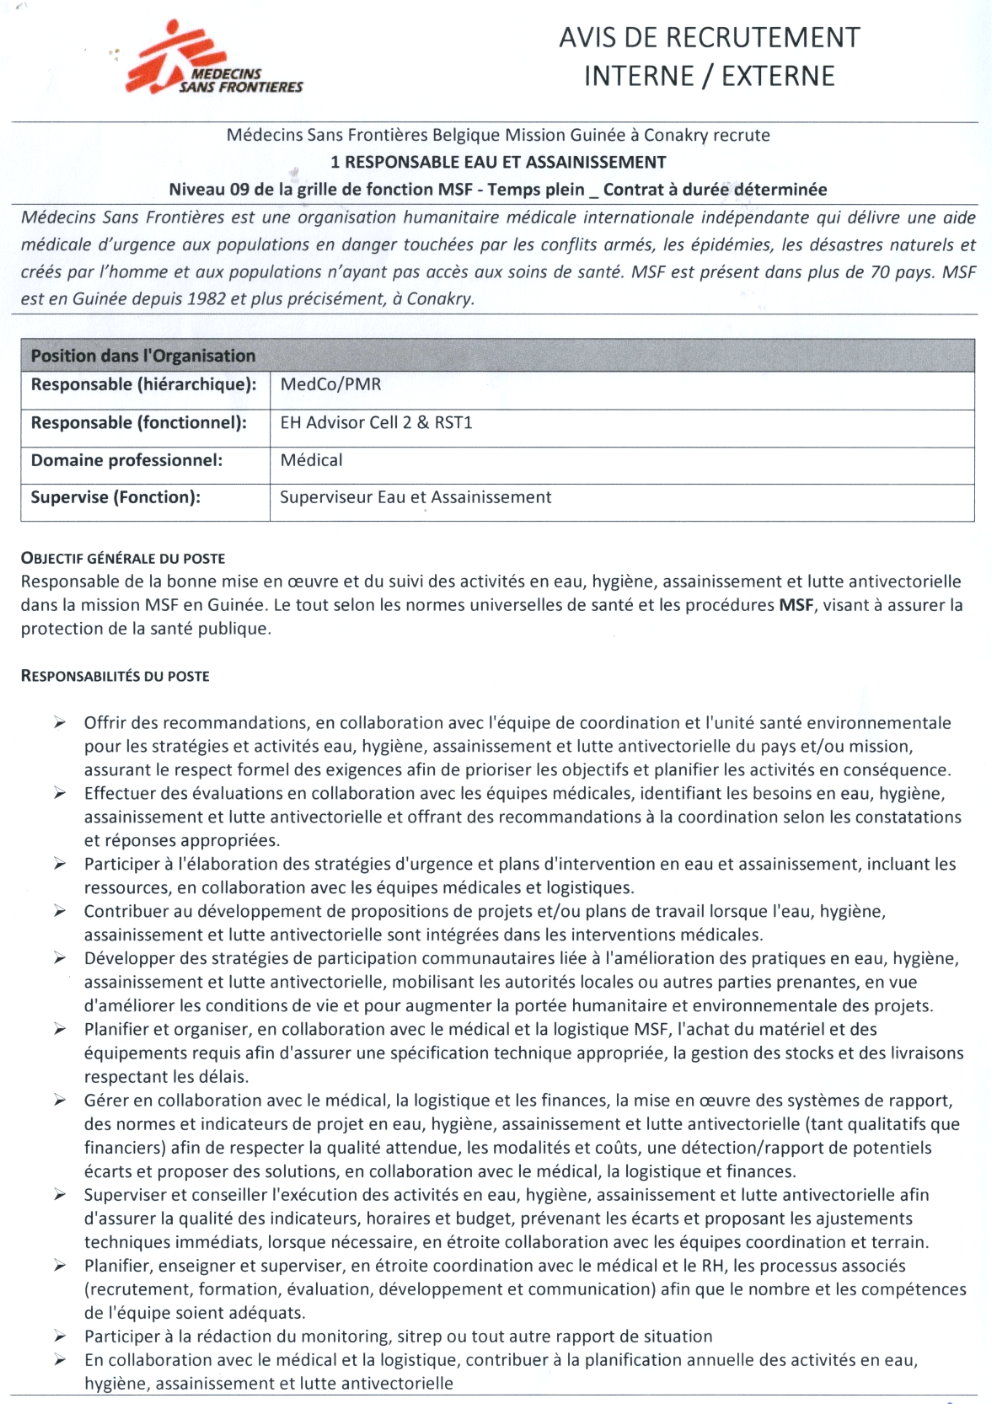 AVIS DE RECRUTEMENT D'UN (1) RESPONSABLE EAU ET ASSAINISSEMENT | Page 1